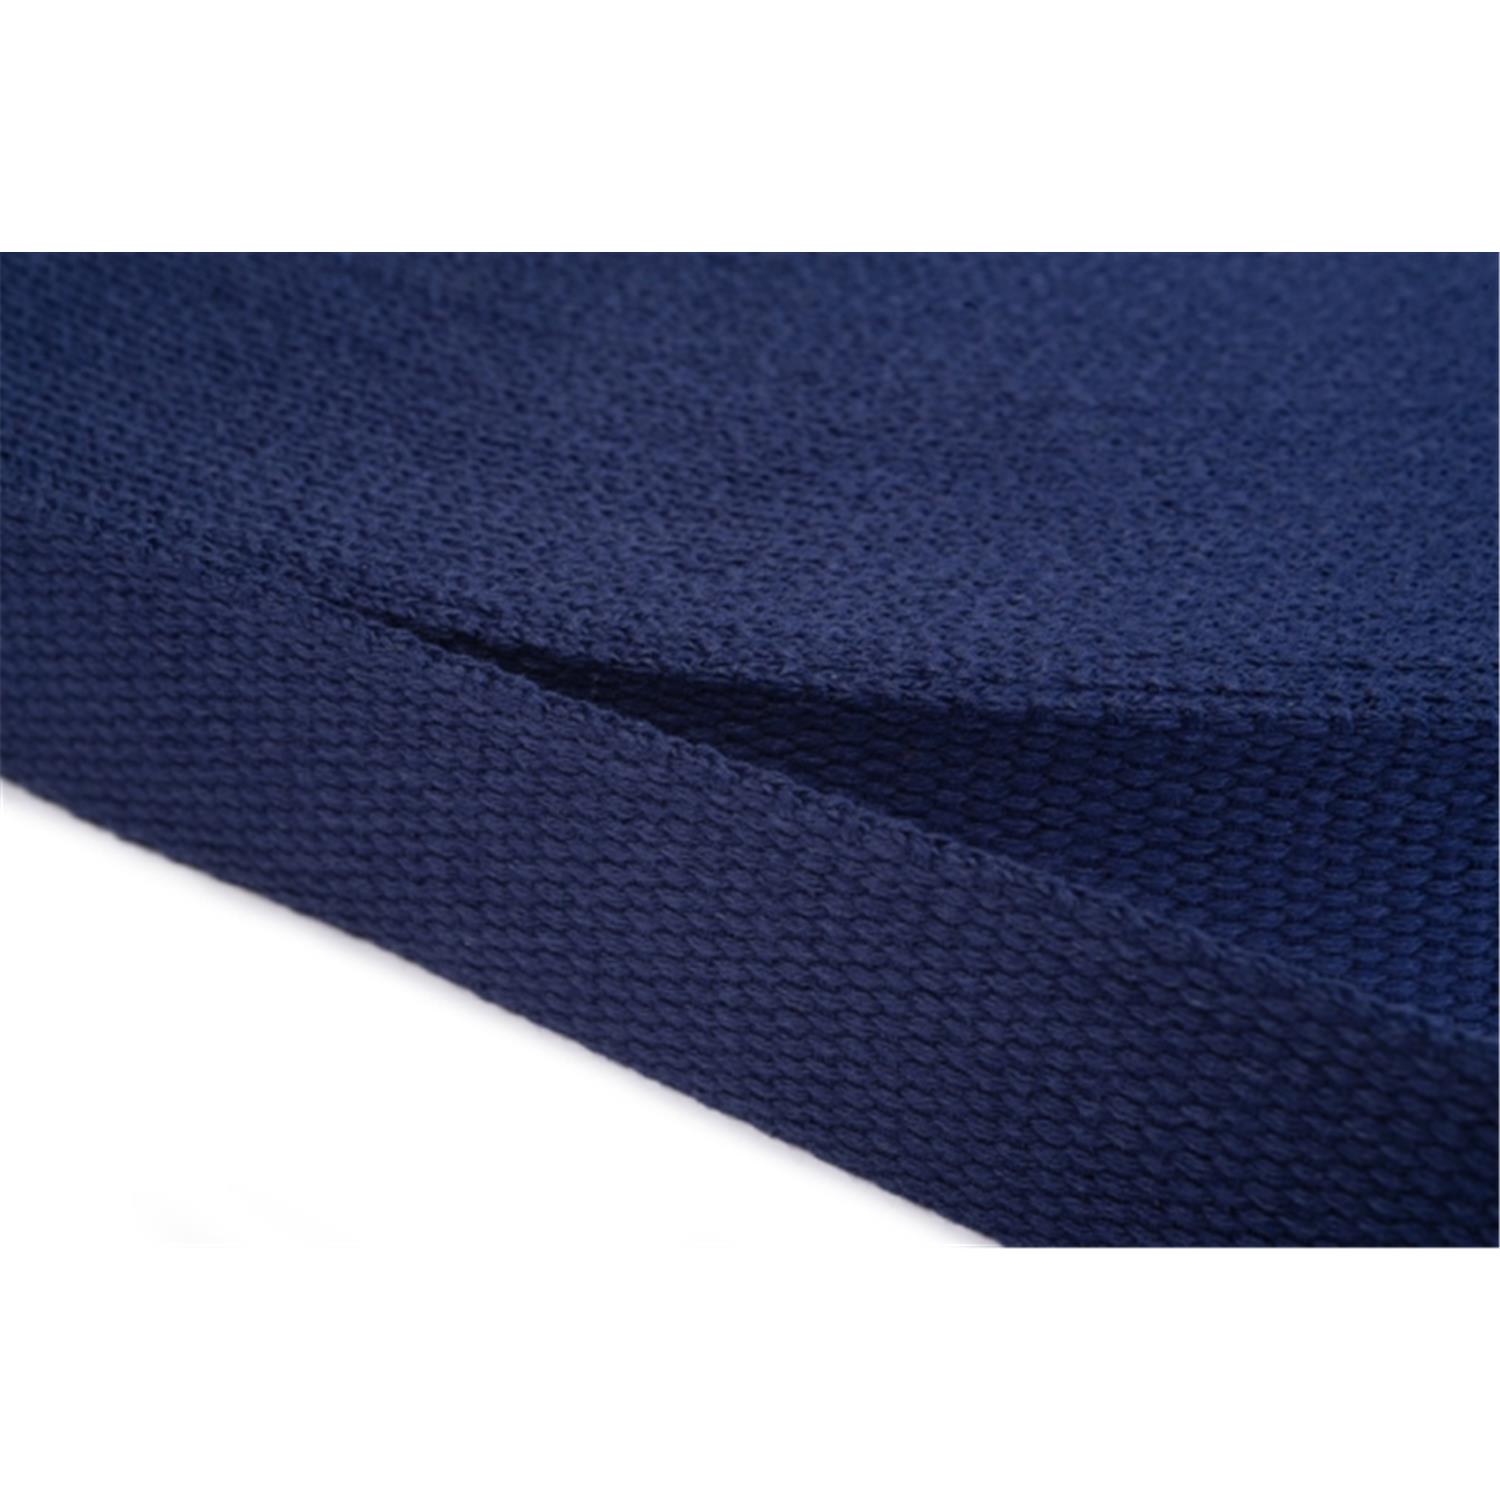 Gurtband aus Baumwolle 20mm in 20 Farben 13 - dunkelblau 6 Meter